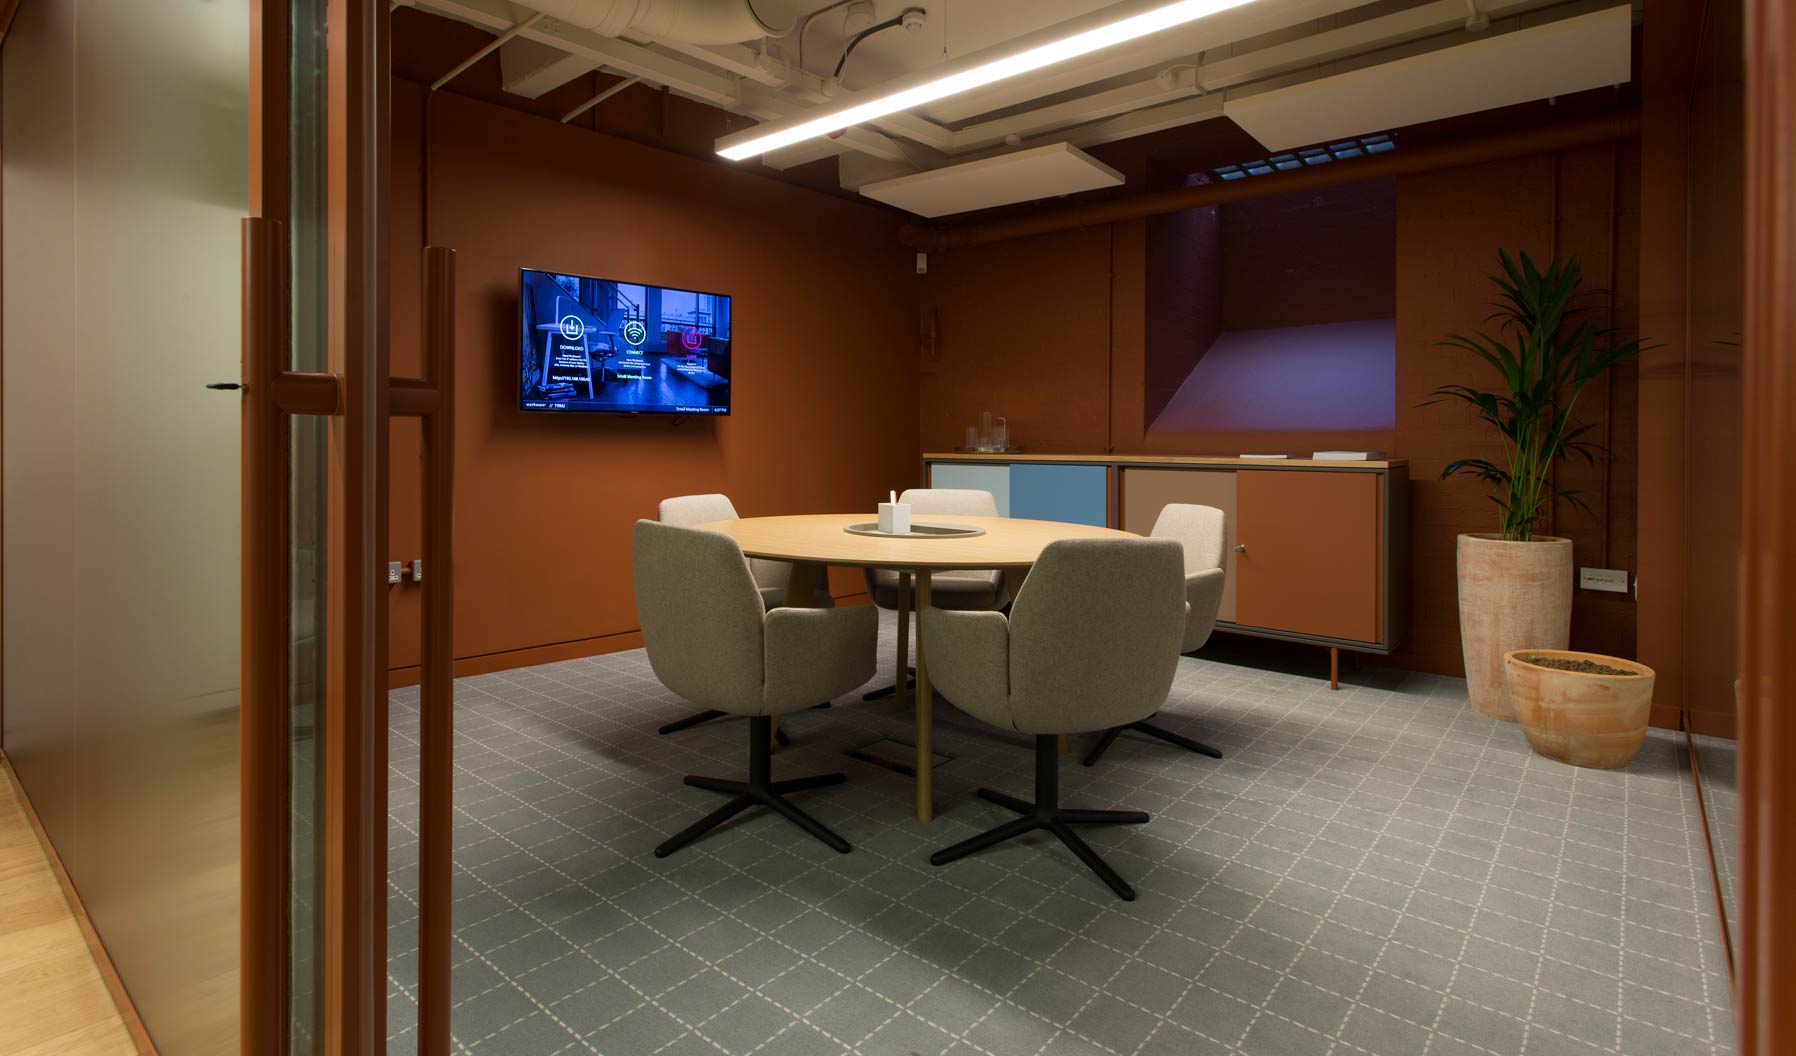 Poppy座椅和Workware技术将舒适度和信息分享相结合，创造出理想的会议空间。